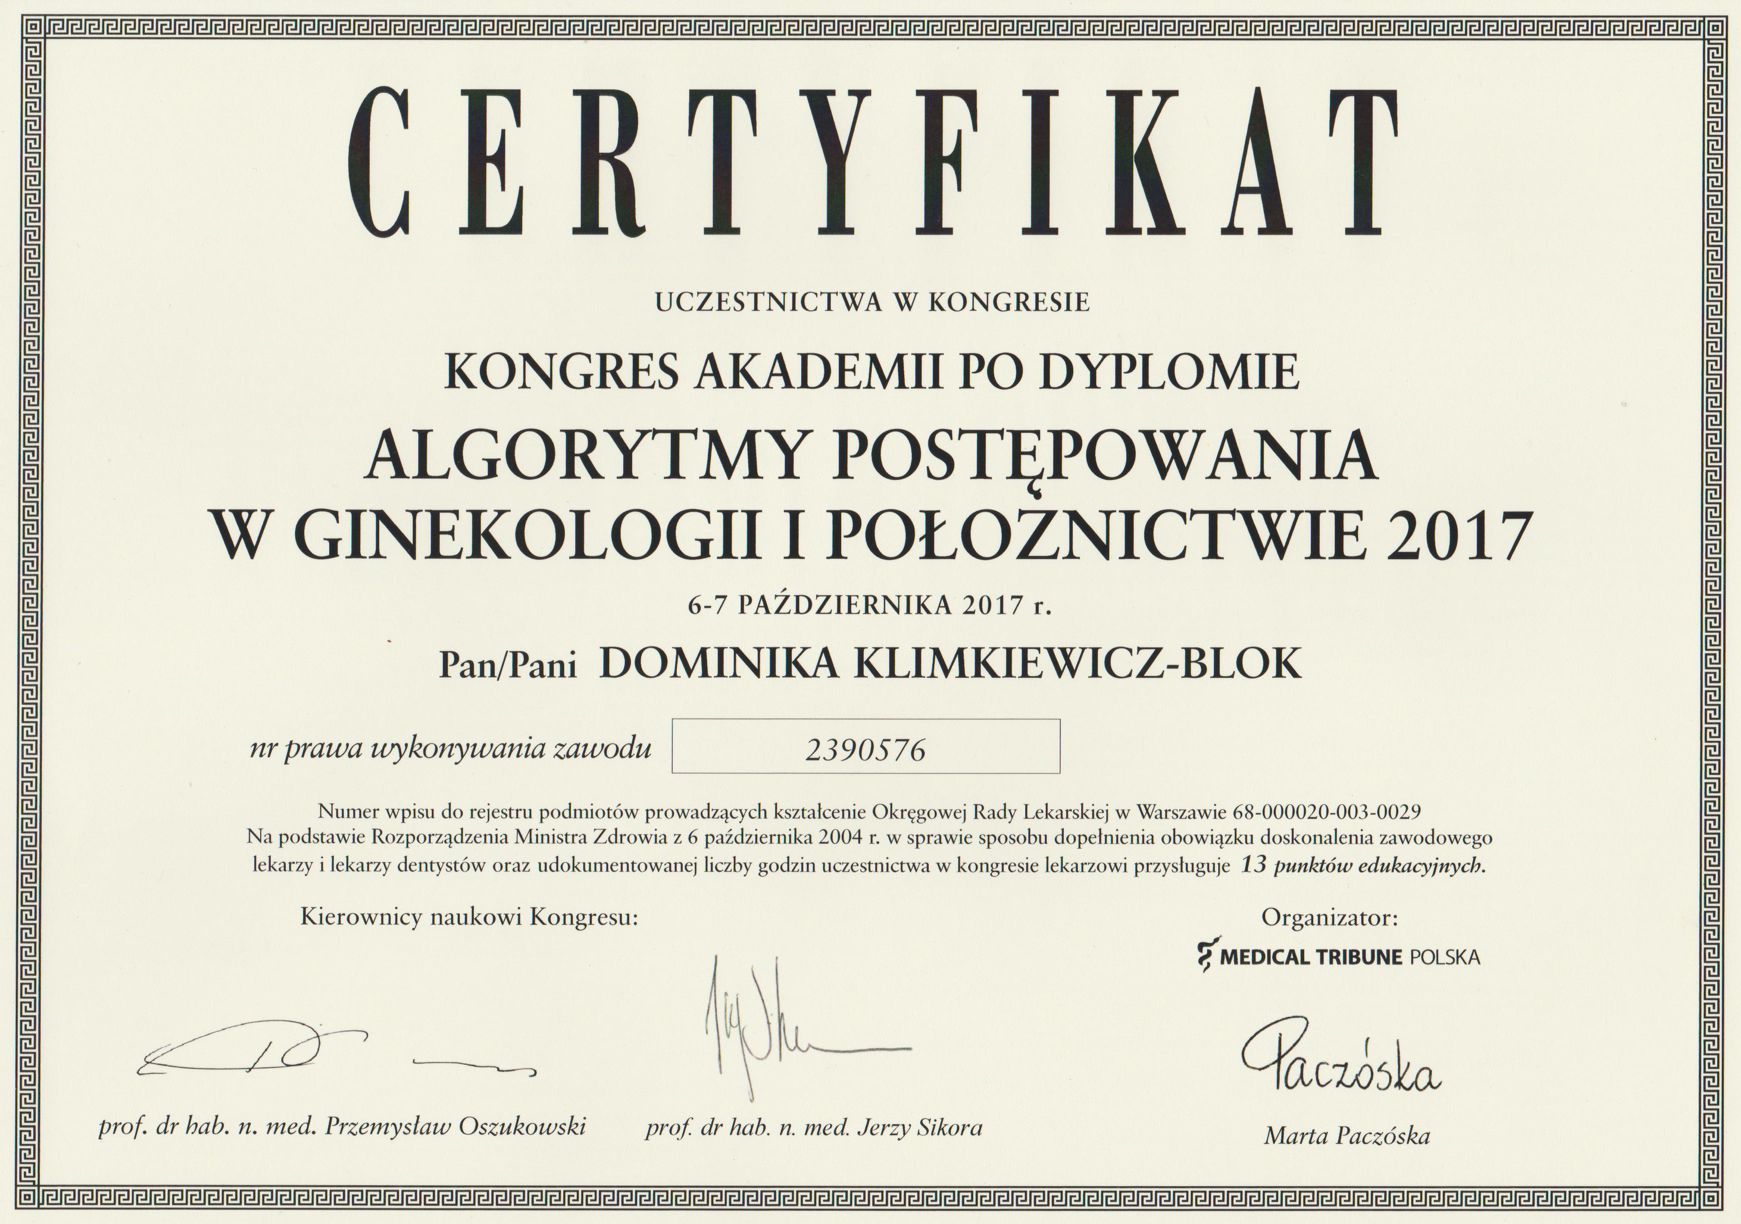 certyfikat_blok_ginekolog_wroclaw_004